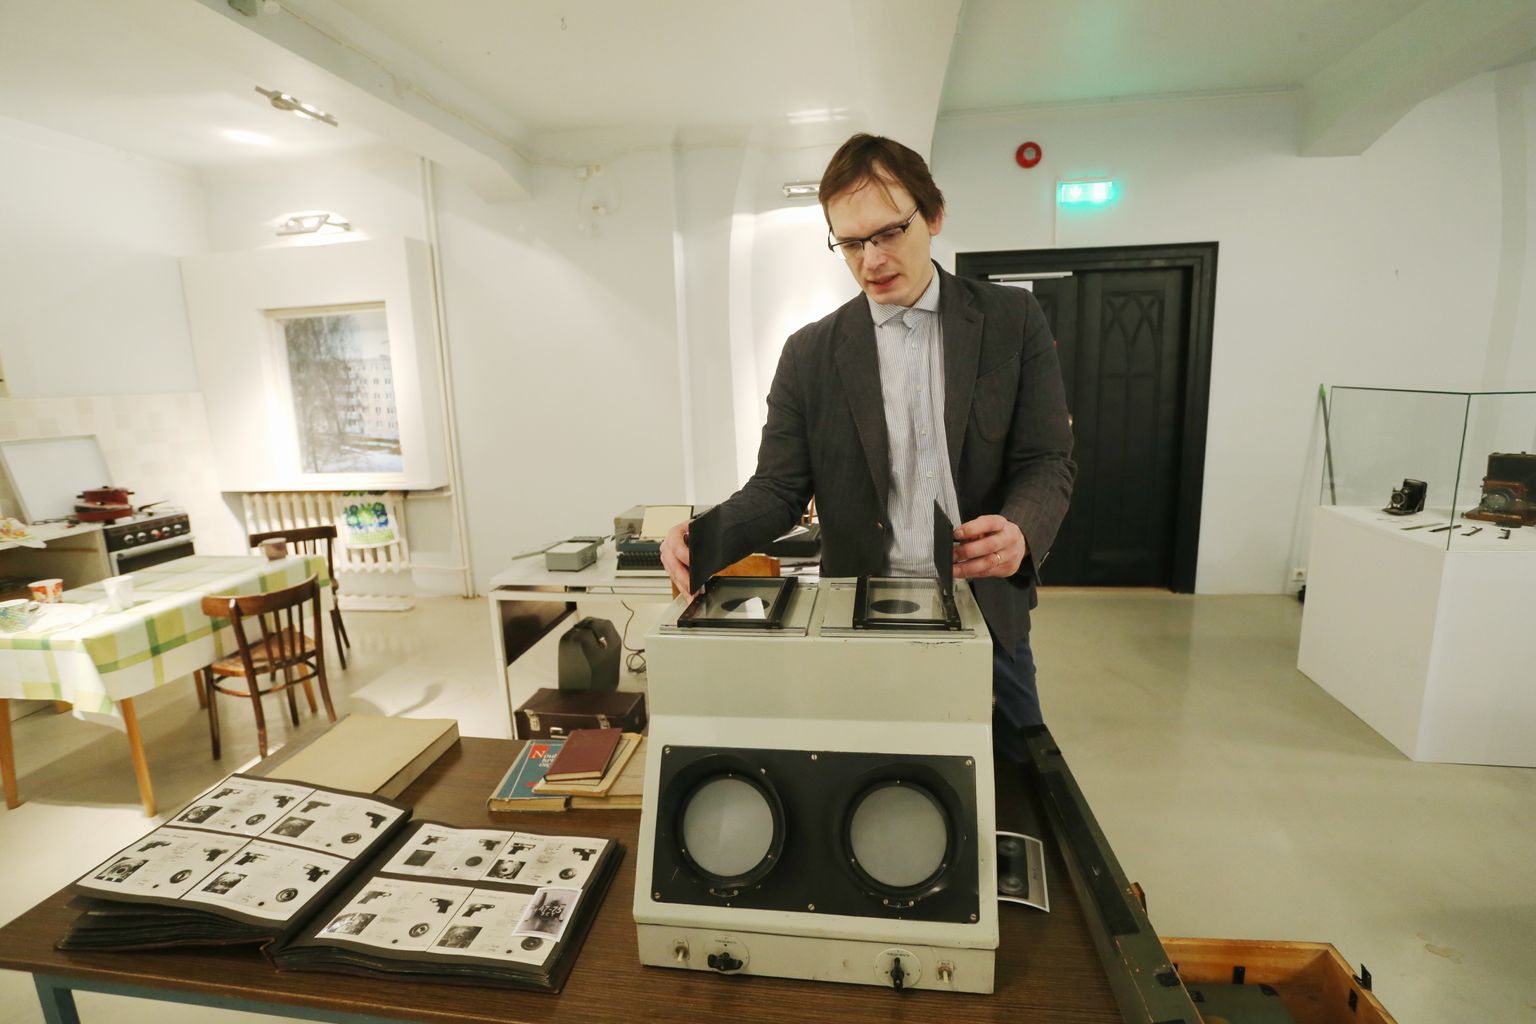 Tartu ülikooli muuseumi kuraator Mairo Rääsk näitas uuel näitusel väljas olevat üsna ebapraktilist võrdlusmasinat, mis oli näiteks sõrmejälgede kõrvutamisel kehv tööriist.